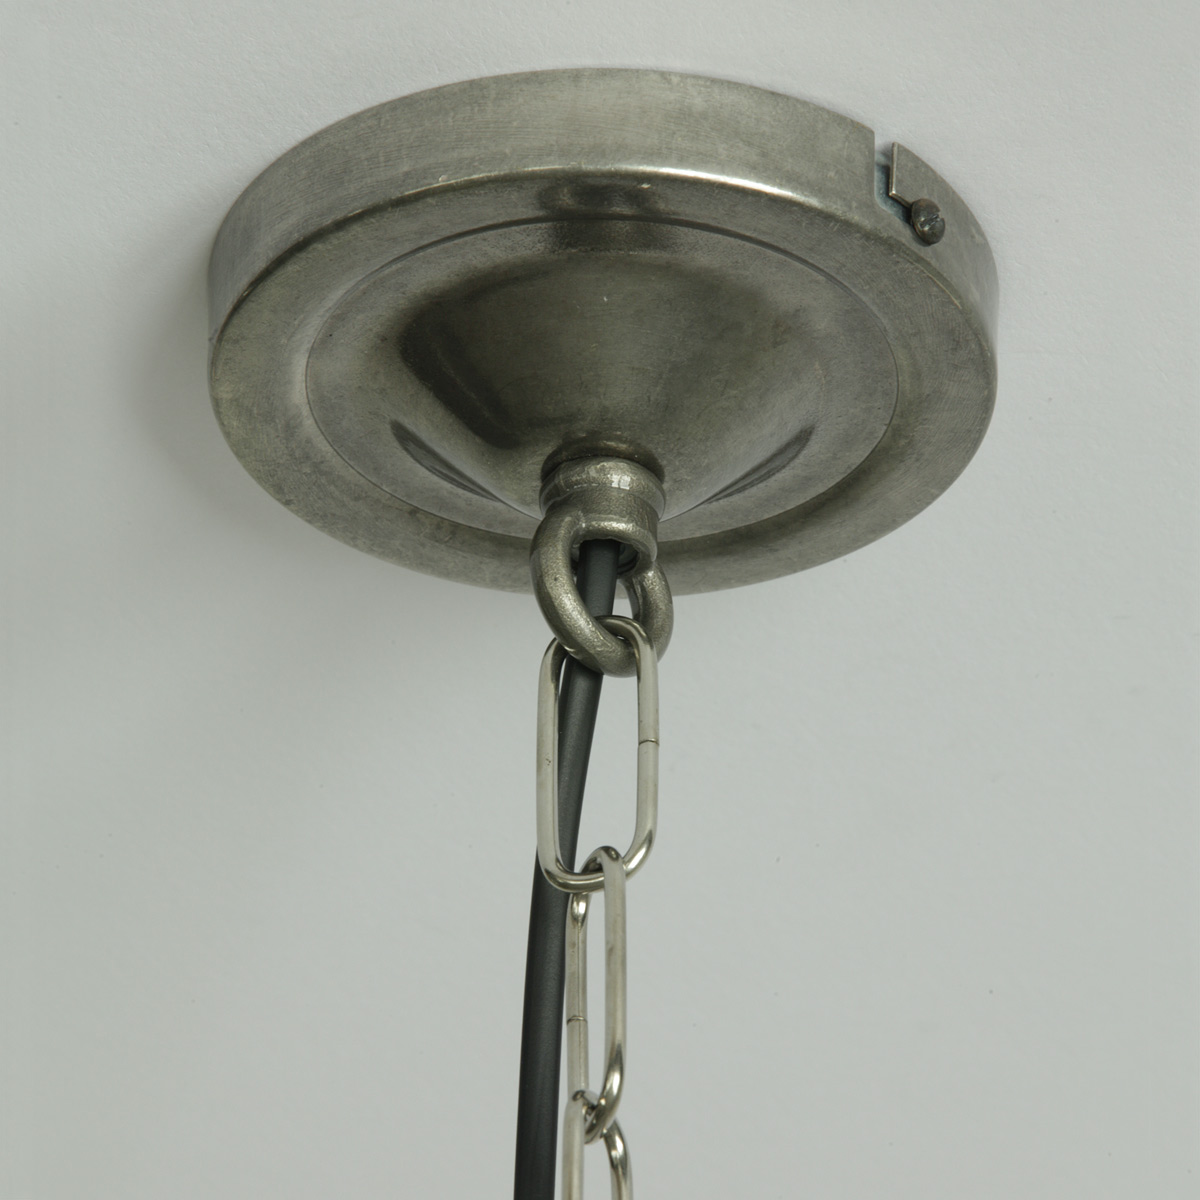 Klassische Kugel-Hängeleuchten mit opaler Glaskugel und Kette, Ø 20 – 40 cm: Deckenteil zur Kettenaufhängung, alt-silbern patiniert, Ø 10 cm